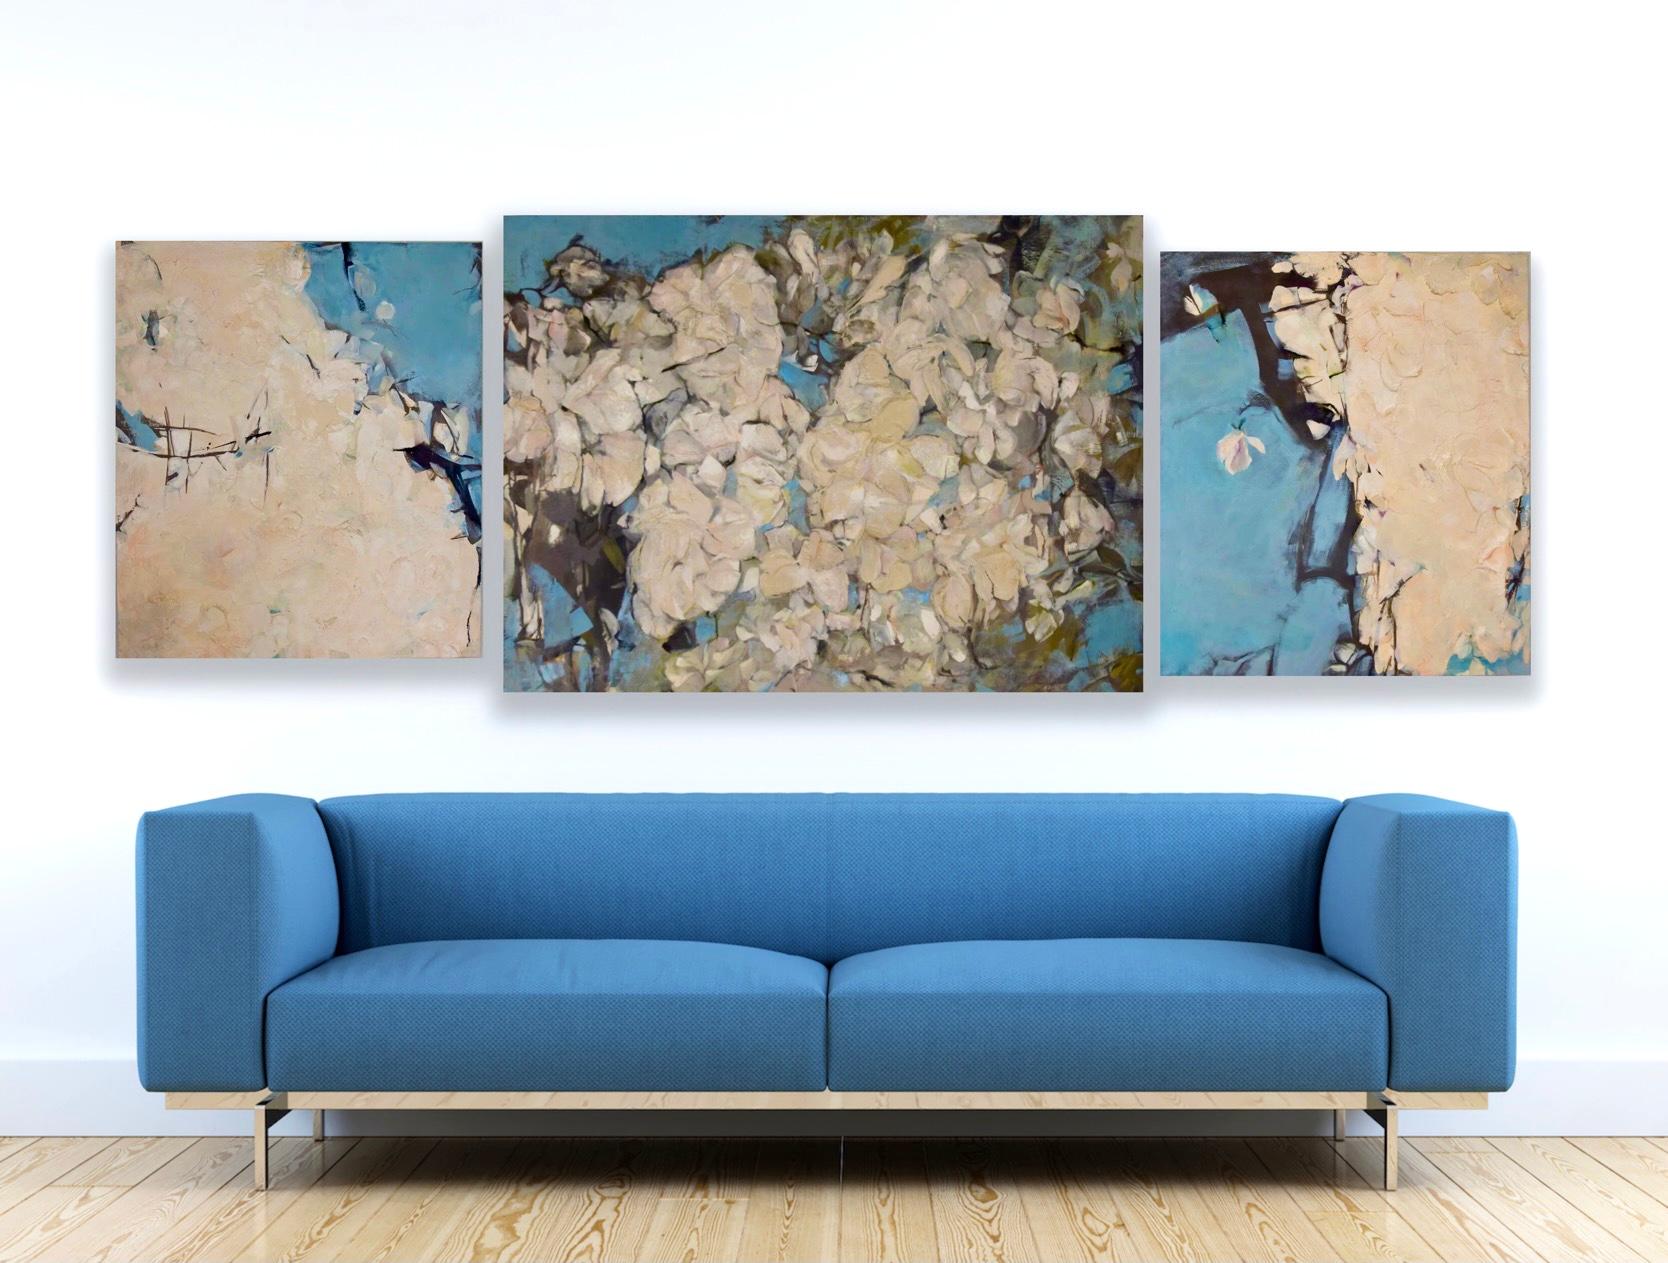 Triptych Magnolia 80x70, 90x120, 80x70 - Art by Zarina Biganti